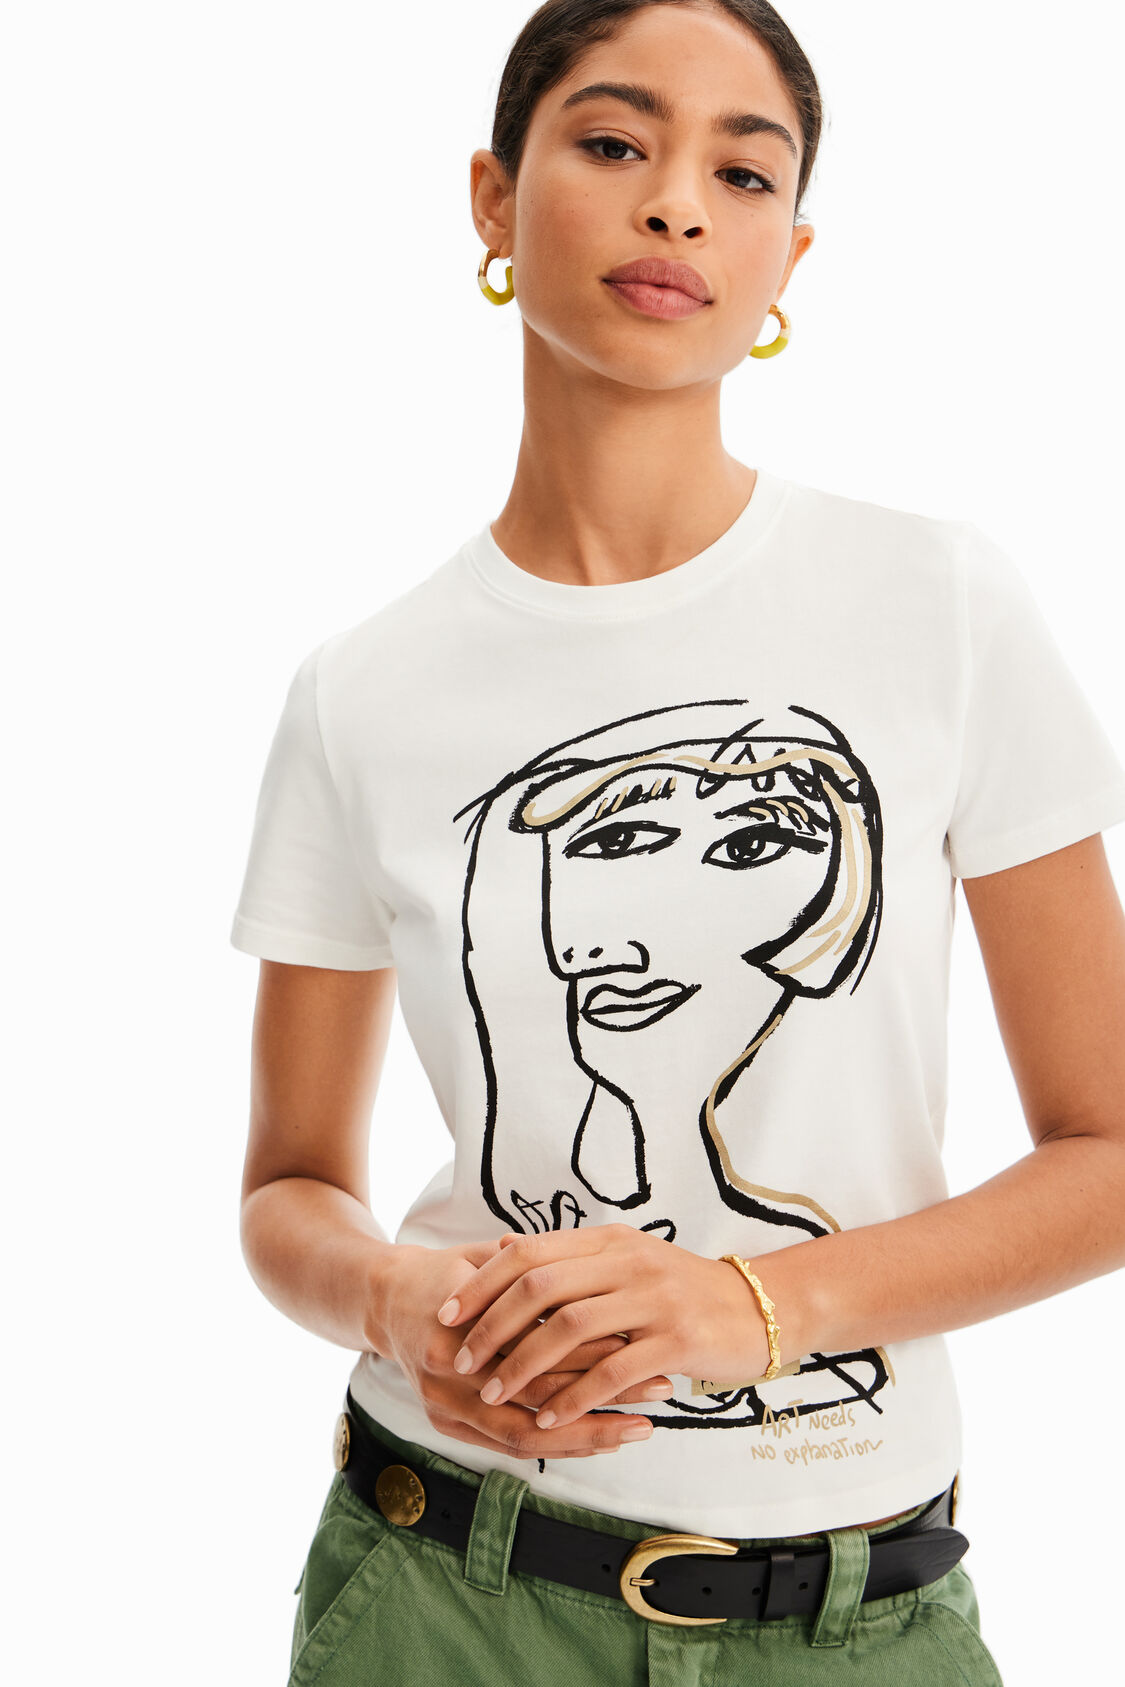 Camiseta arty de mujer I Desigual.com